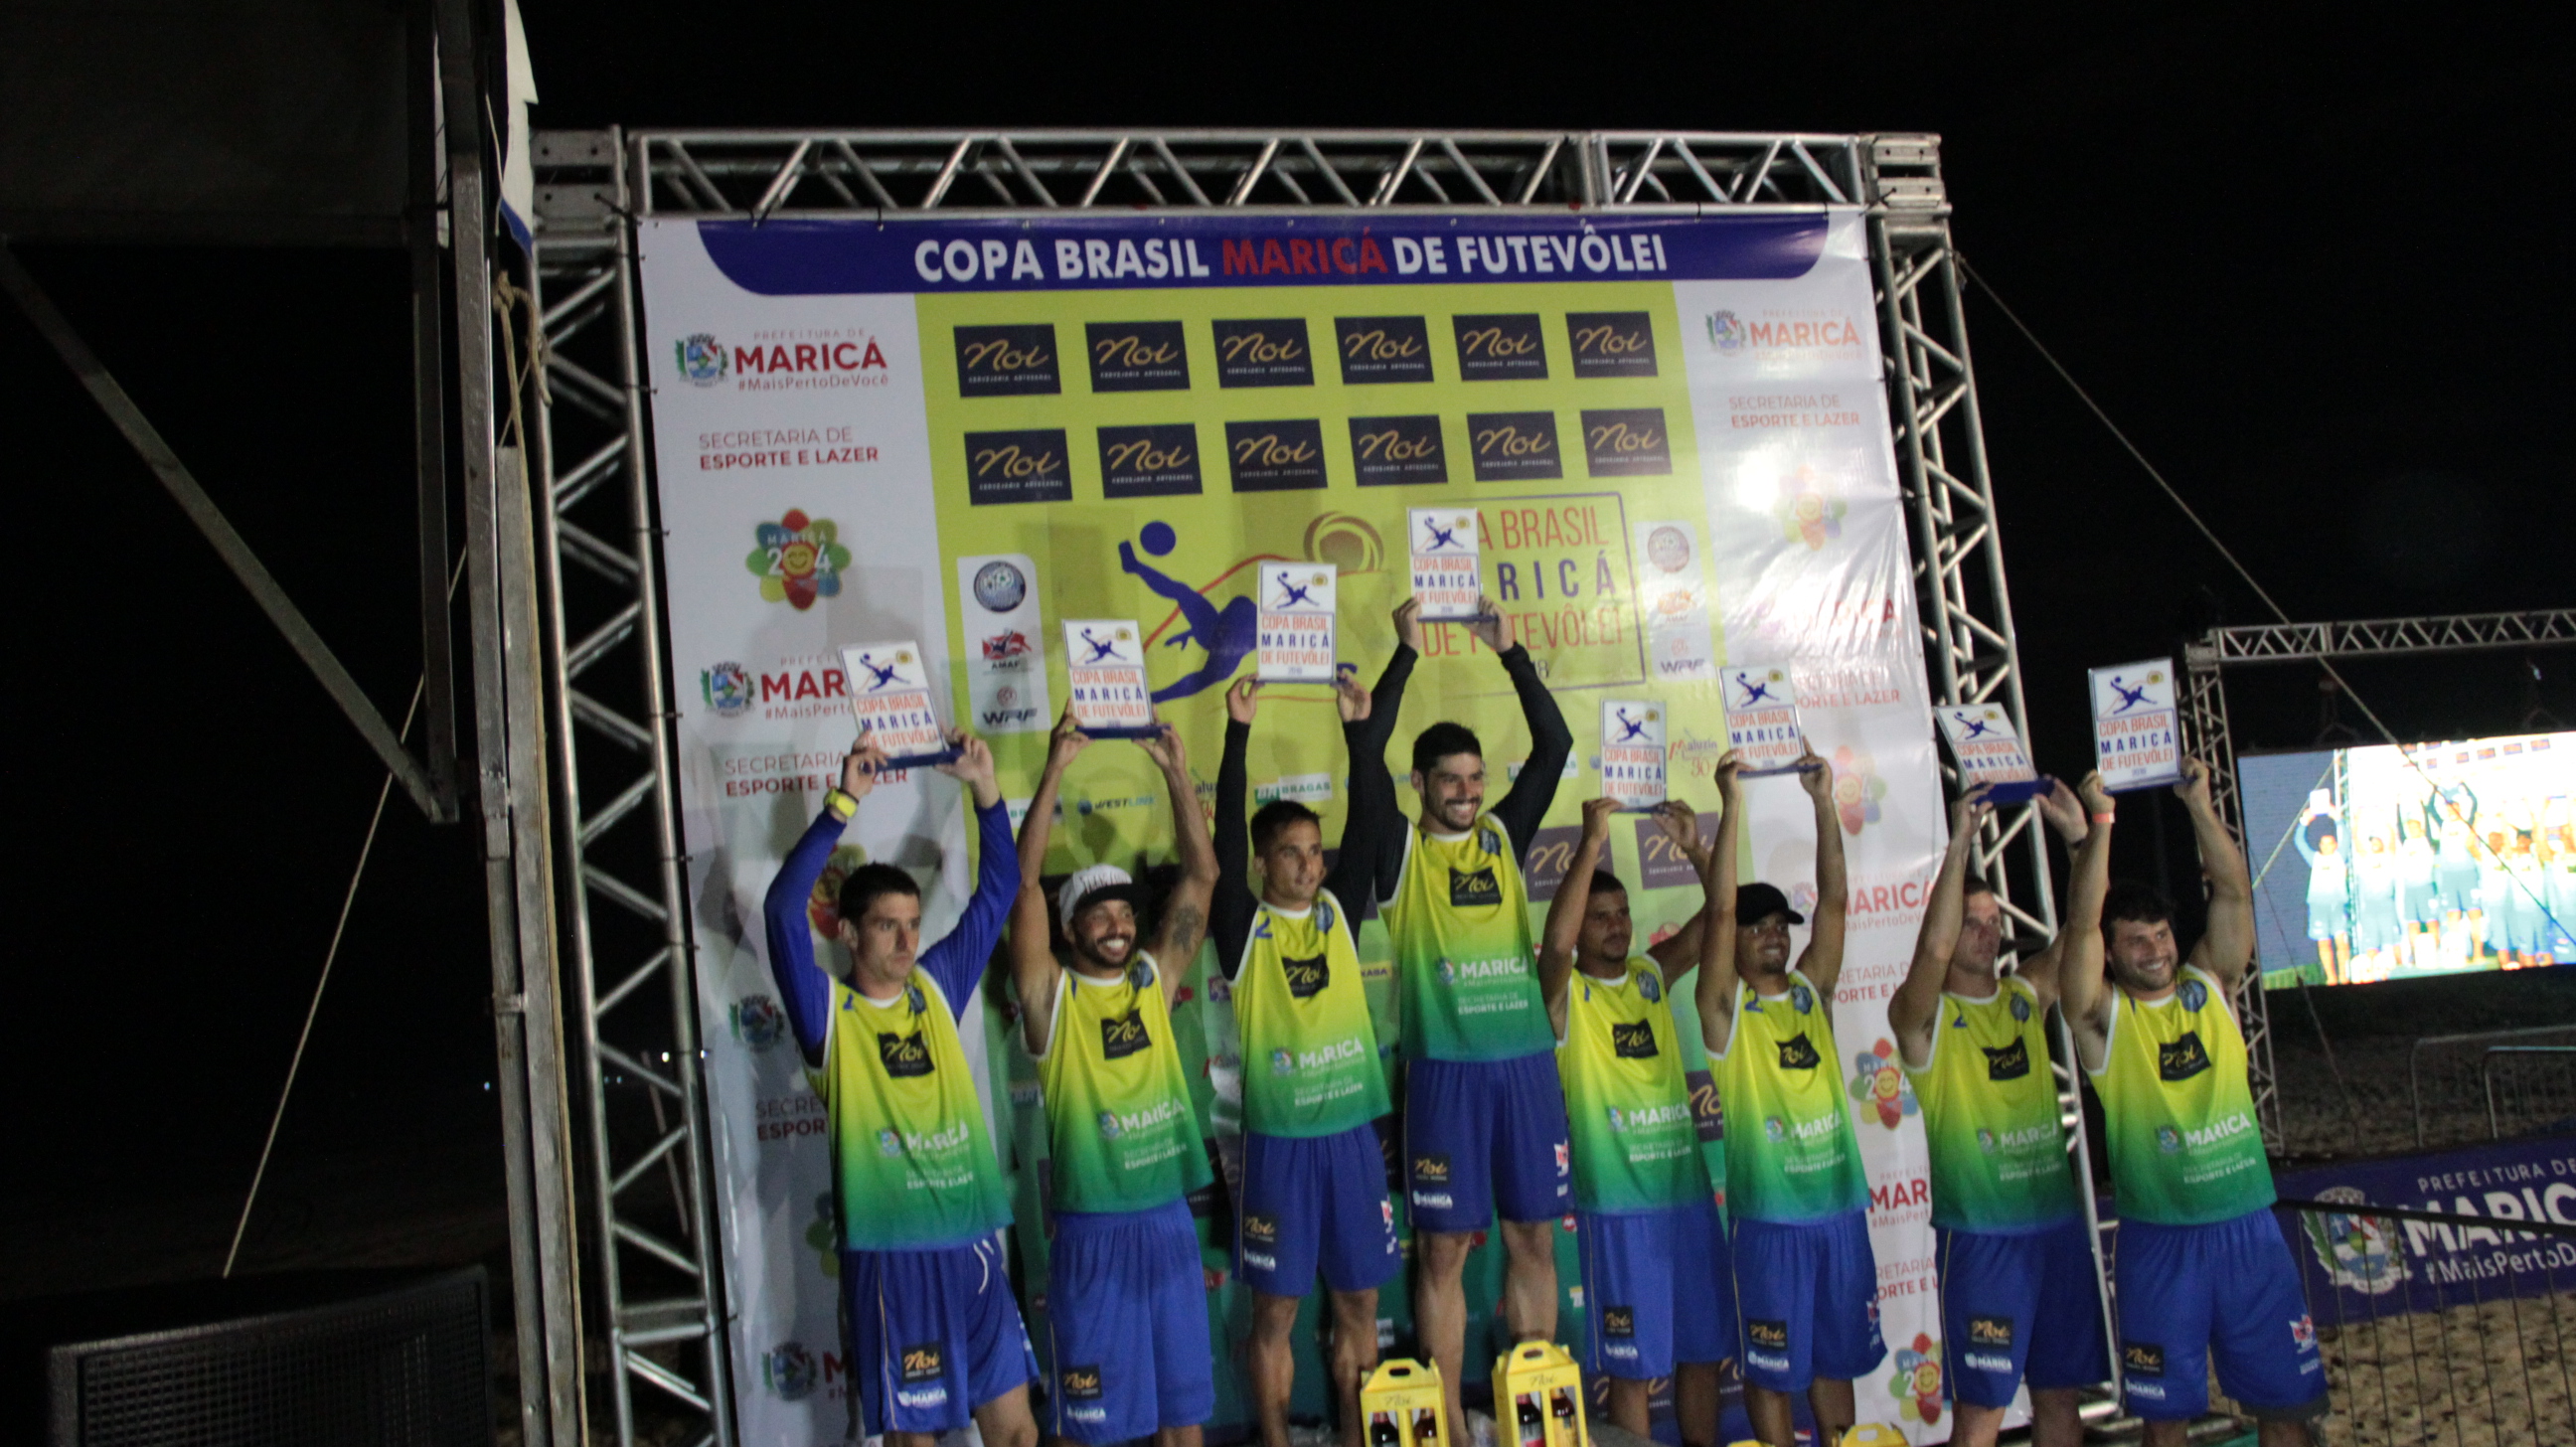 Categoria Masculina – Copa Brasil Maricá de Futevôlei – disputa ponto a ponto. Haja coração!!!!